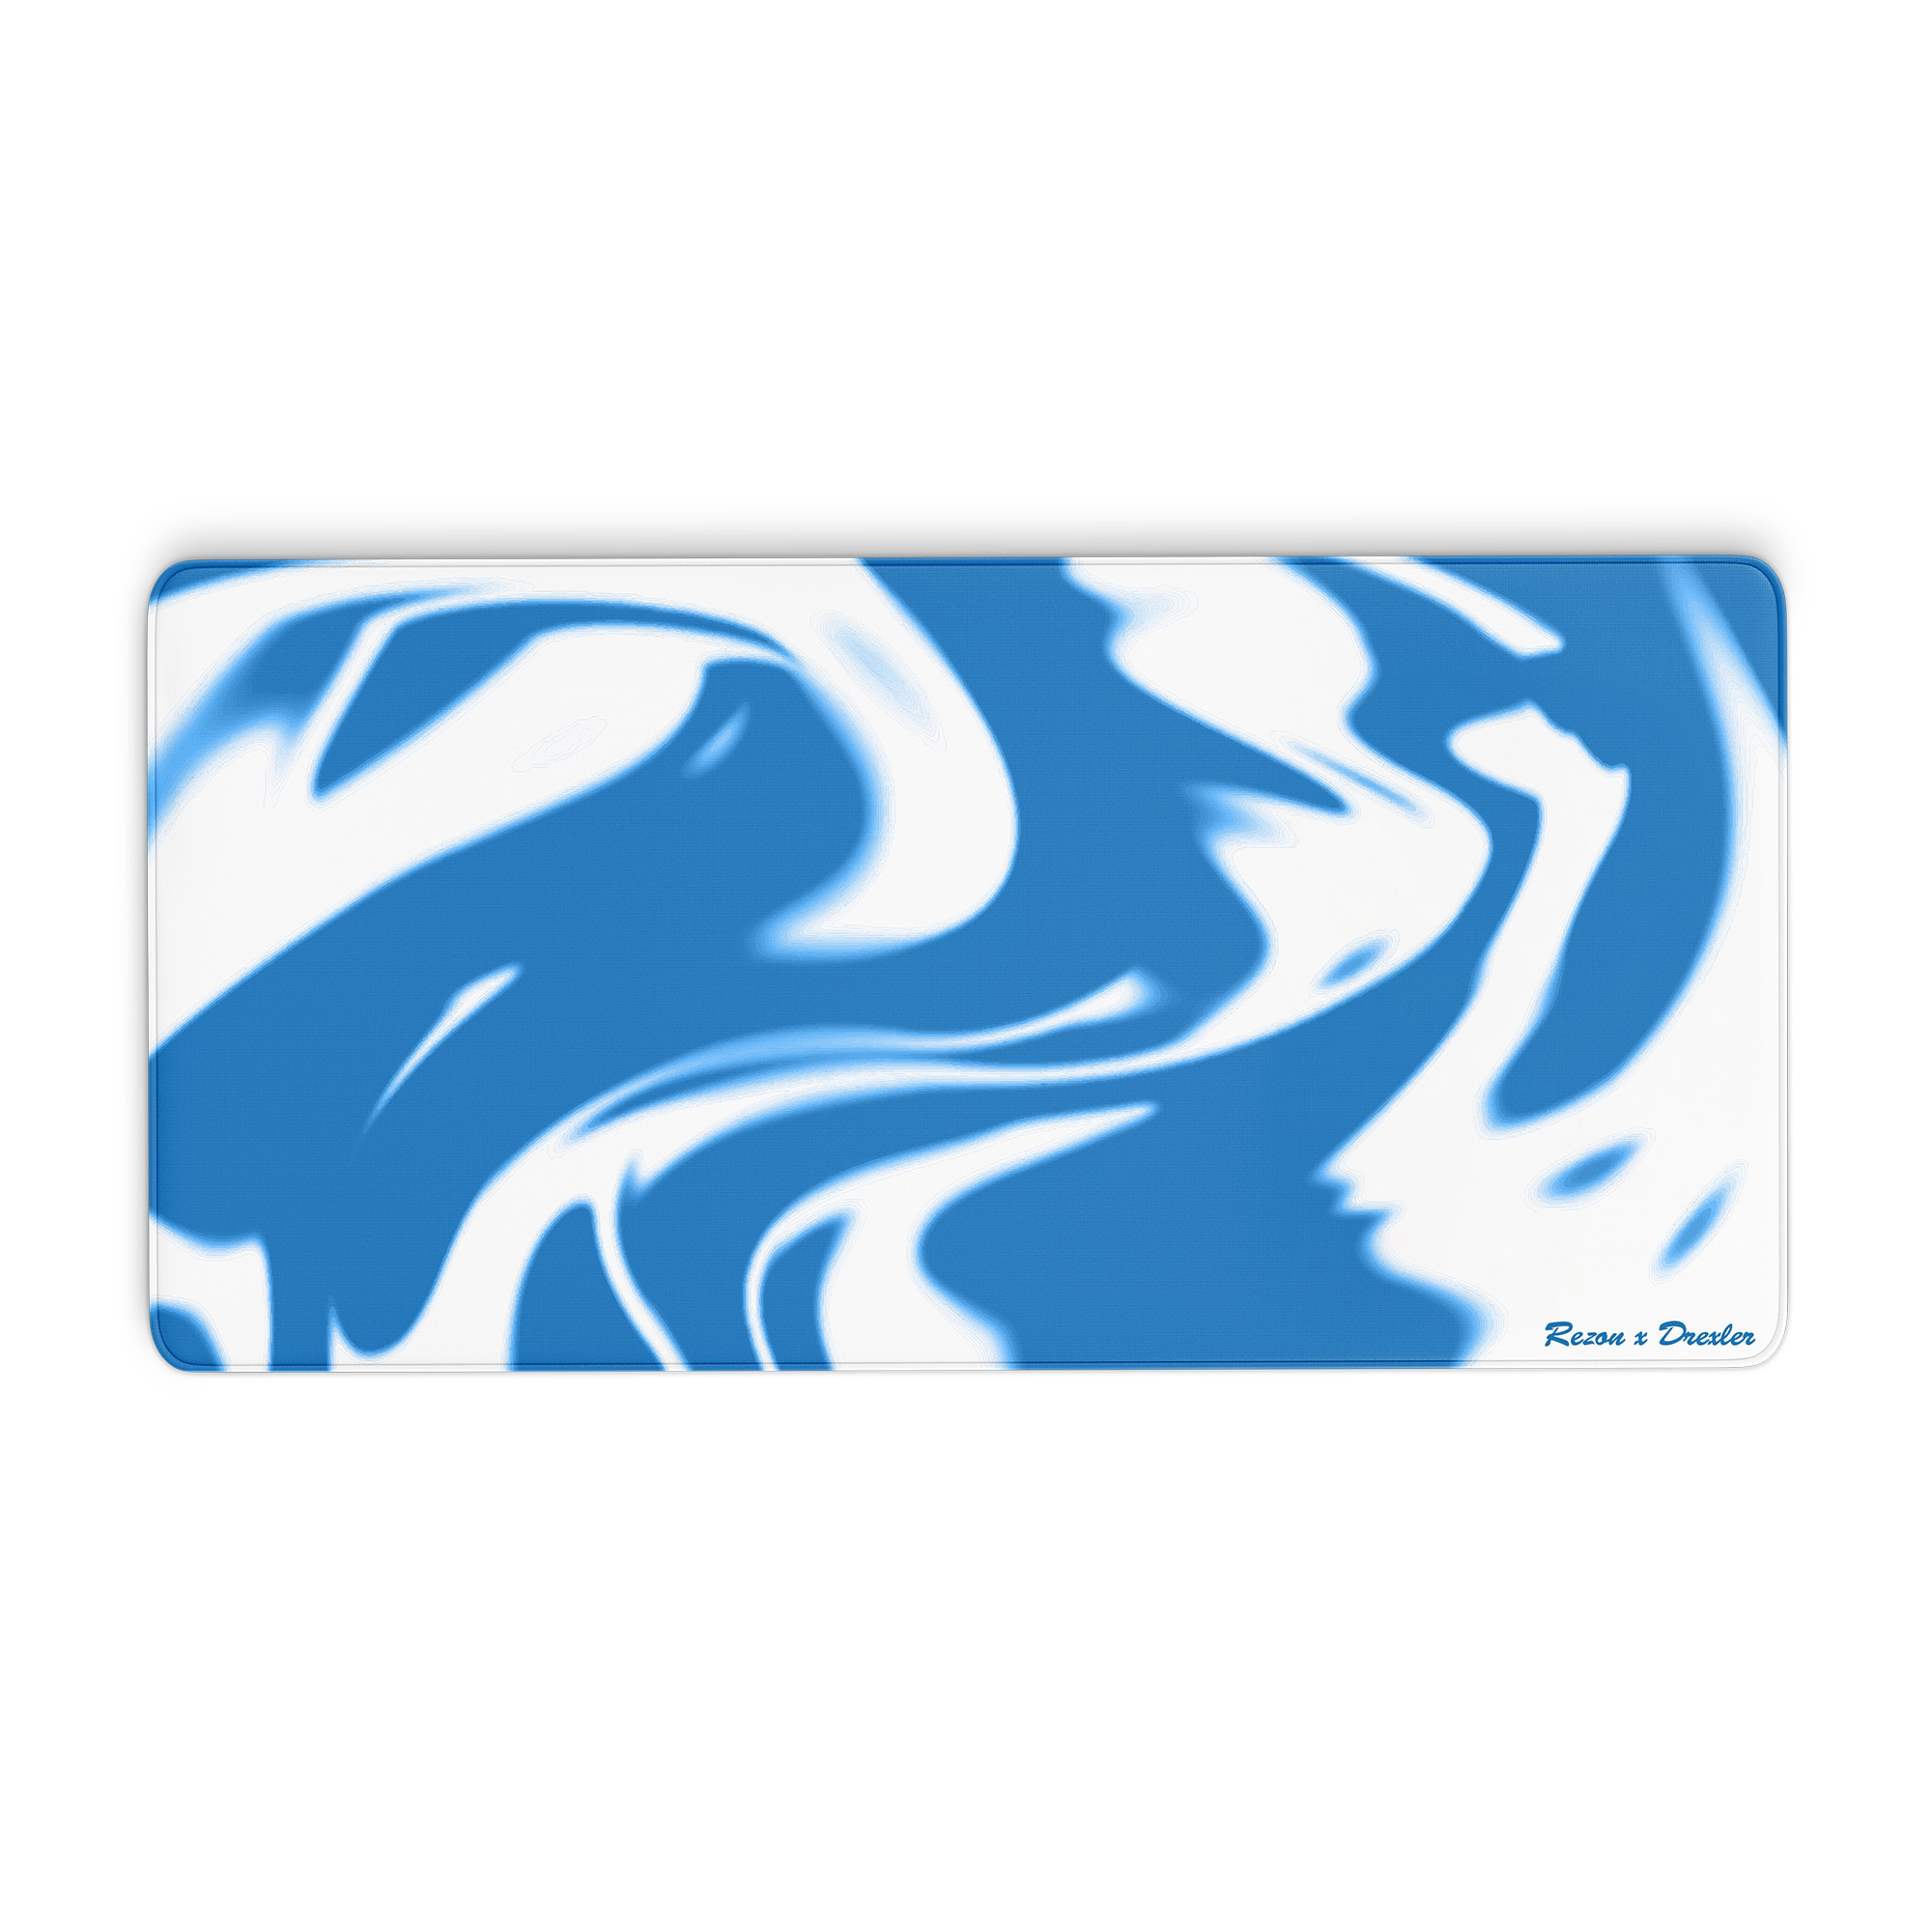 strayfe Mauspad – Rezon x Drexler – Blue Washed – 1200x600x3mm